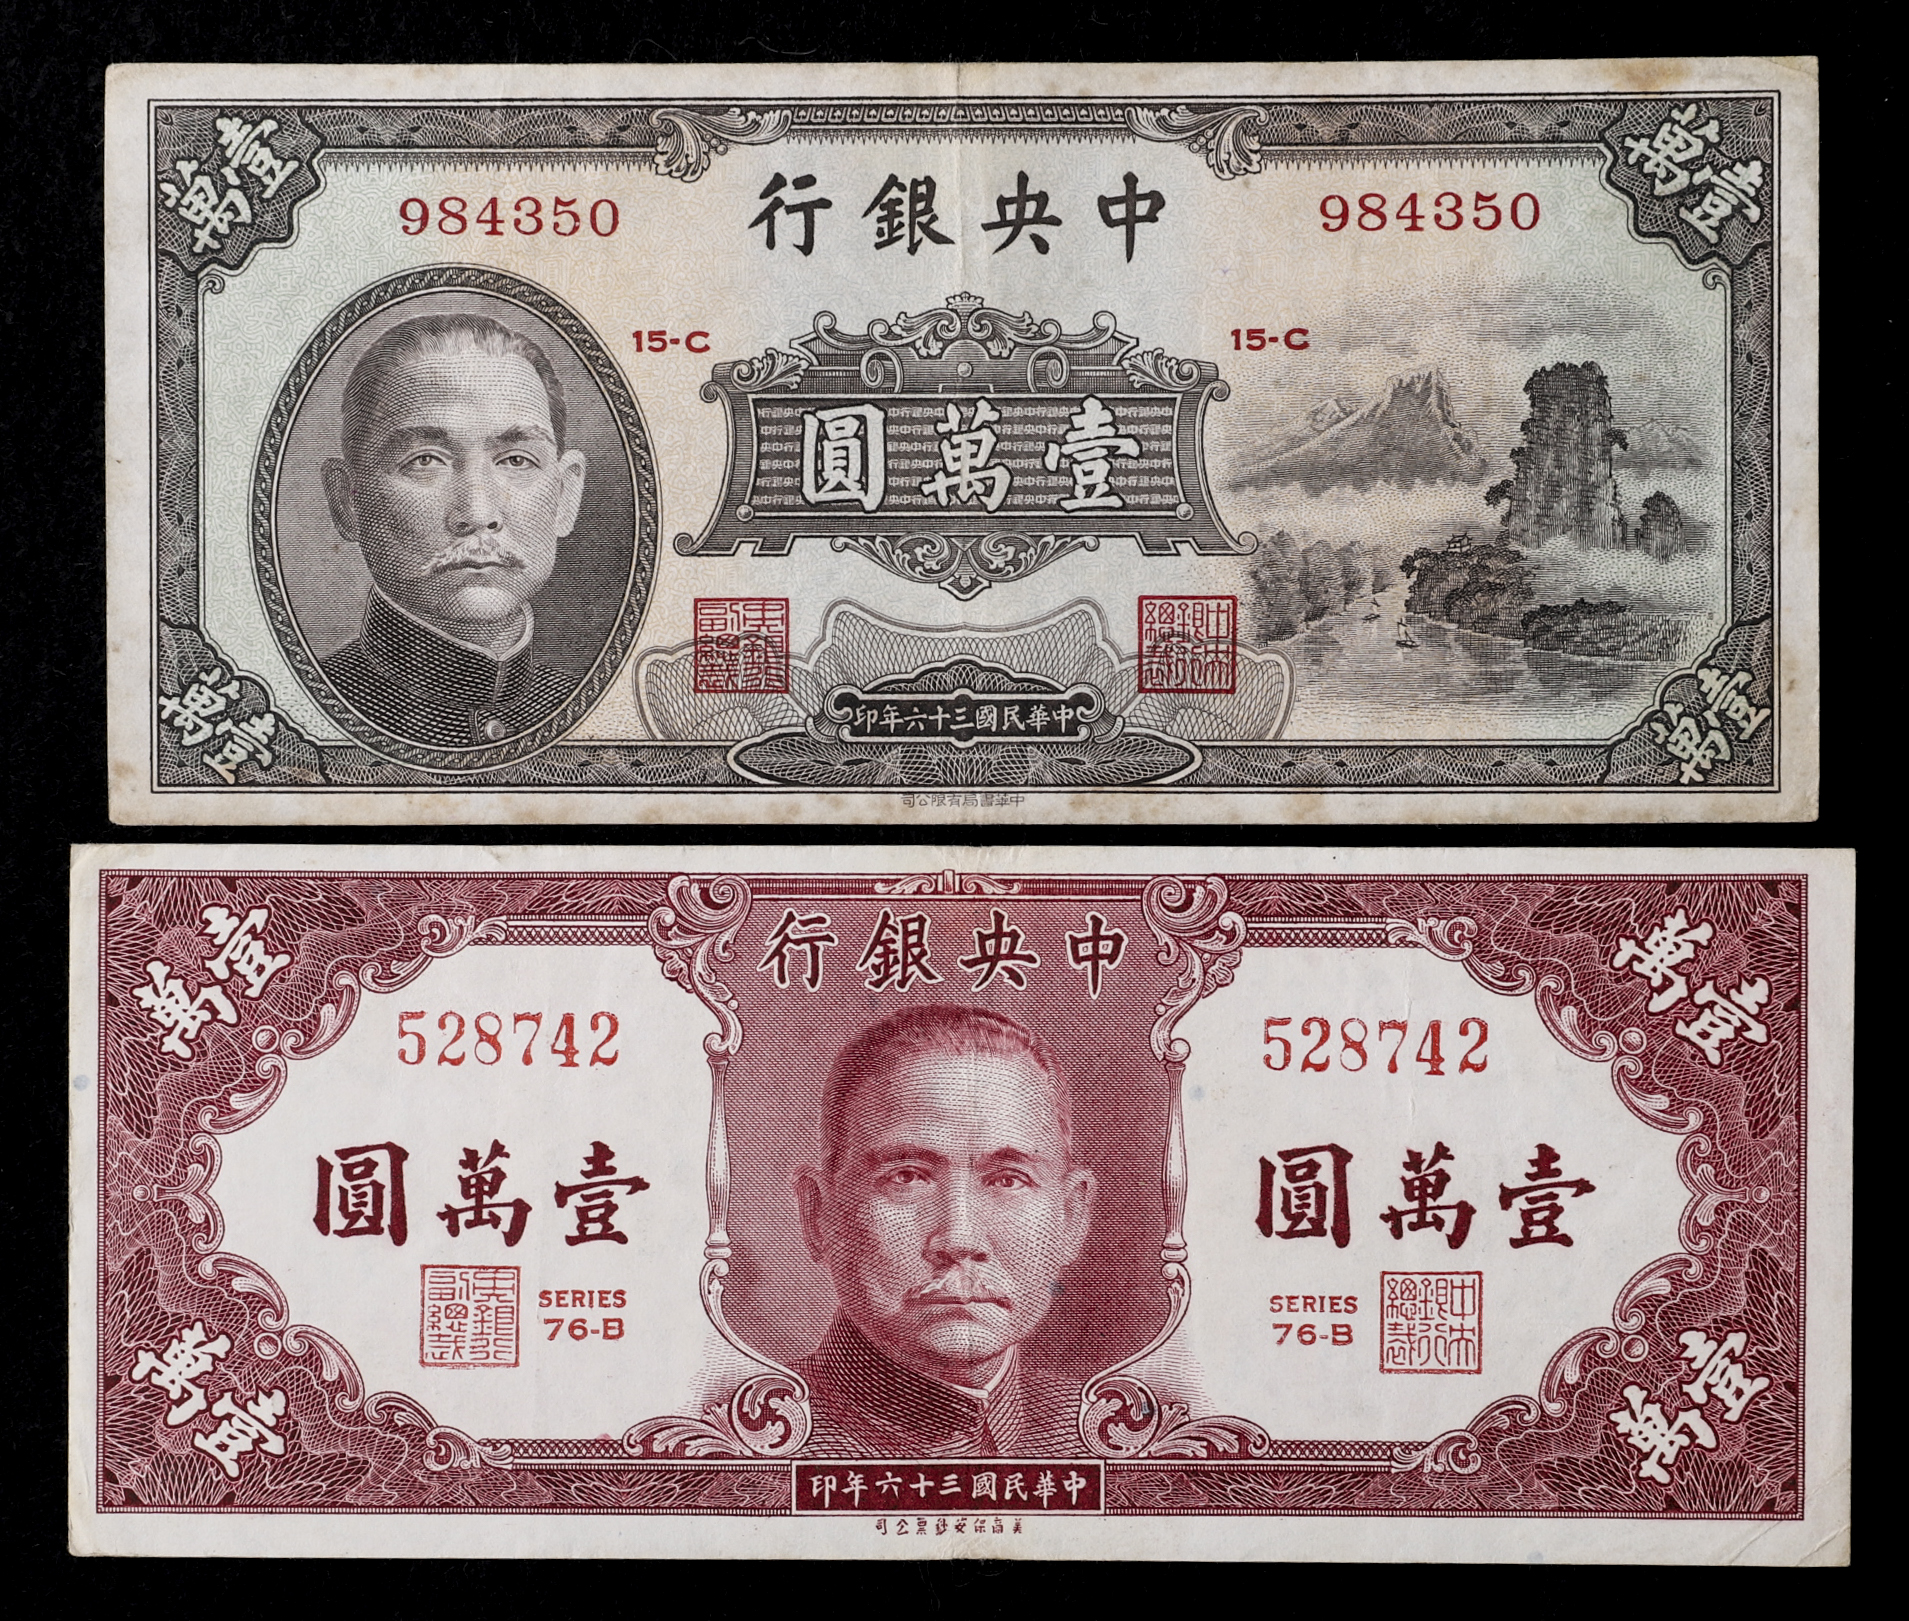 貨幣博物館 | 中華民国中央銀行券 壹萬圓 民国36年(1947)×2